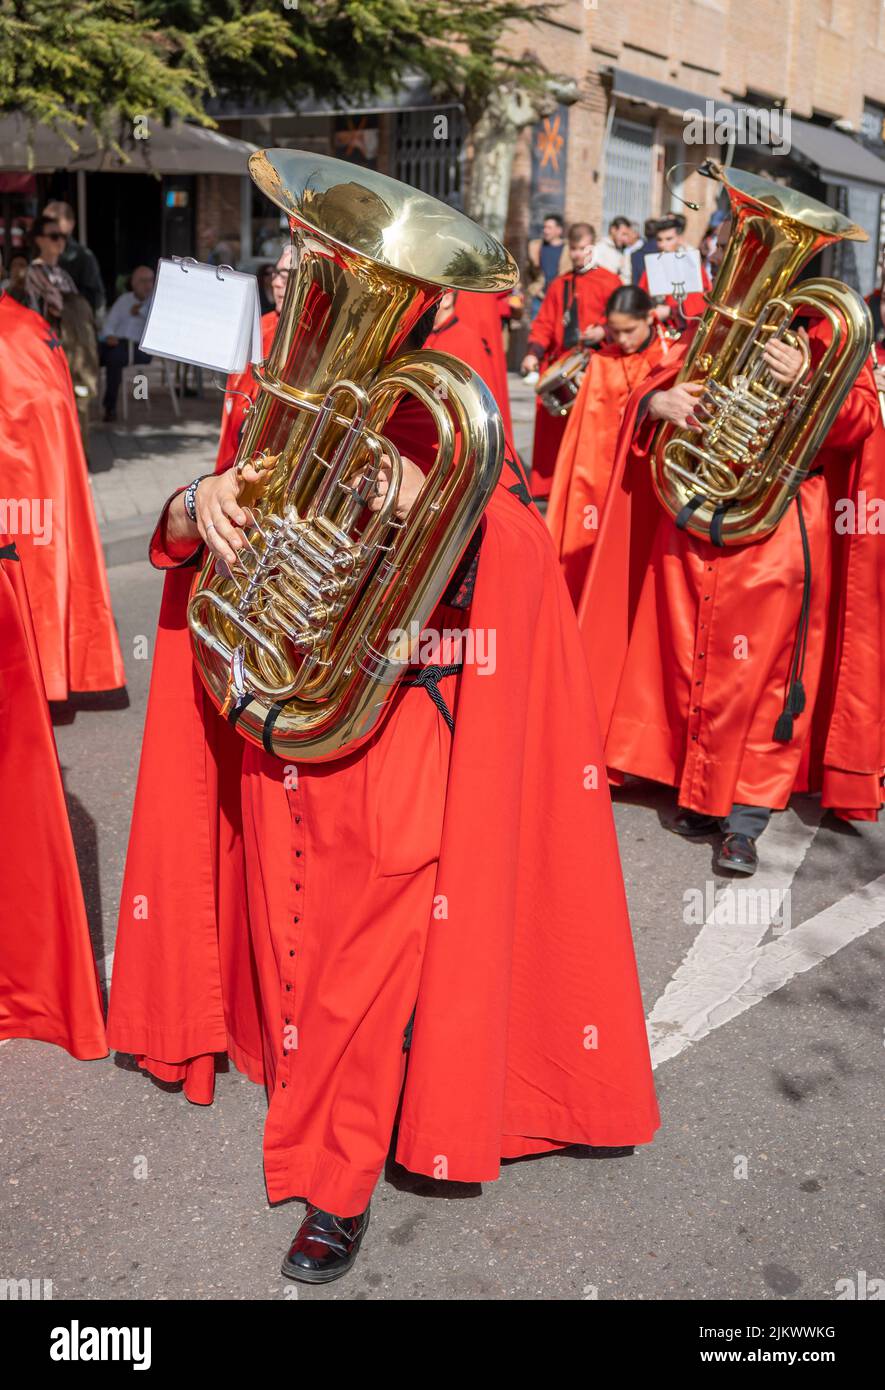 Semana santa Valladolid, músicos con instrumento de viento tuba desfilando durante procesión de jueves santo Stock Photo